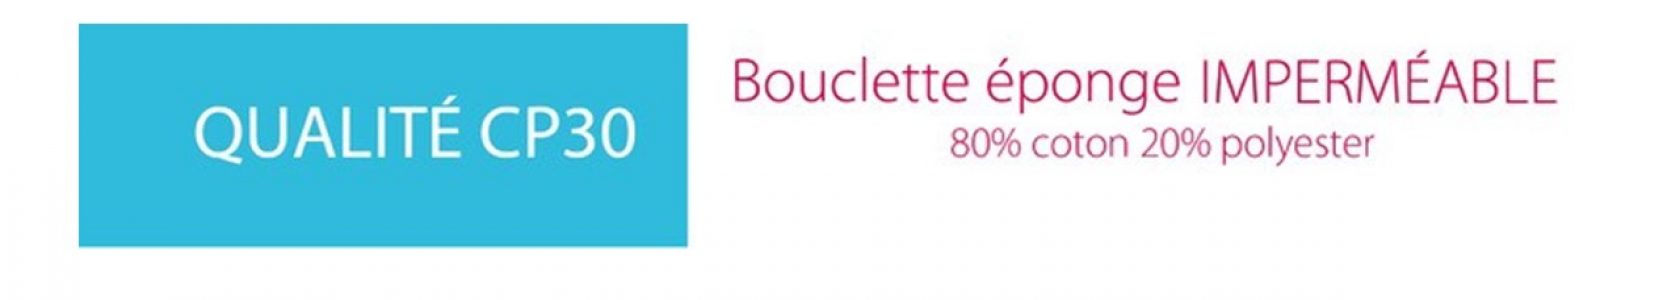 Bouclette éponge imperméable CP30